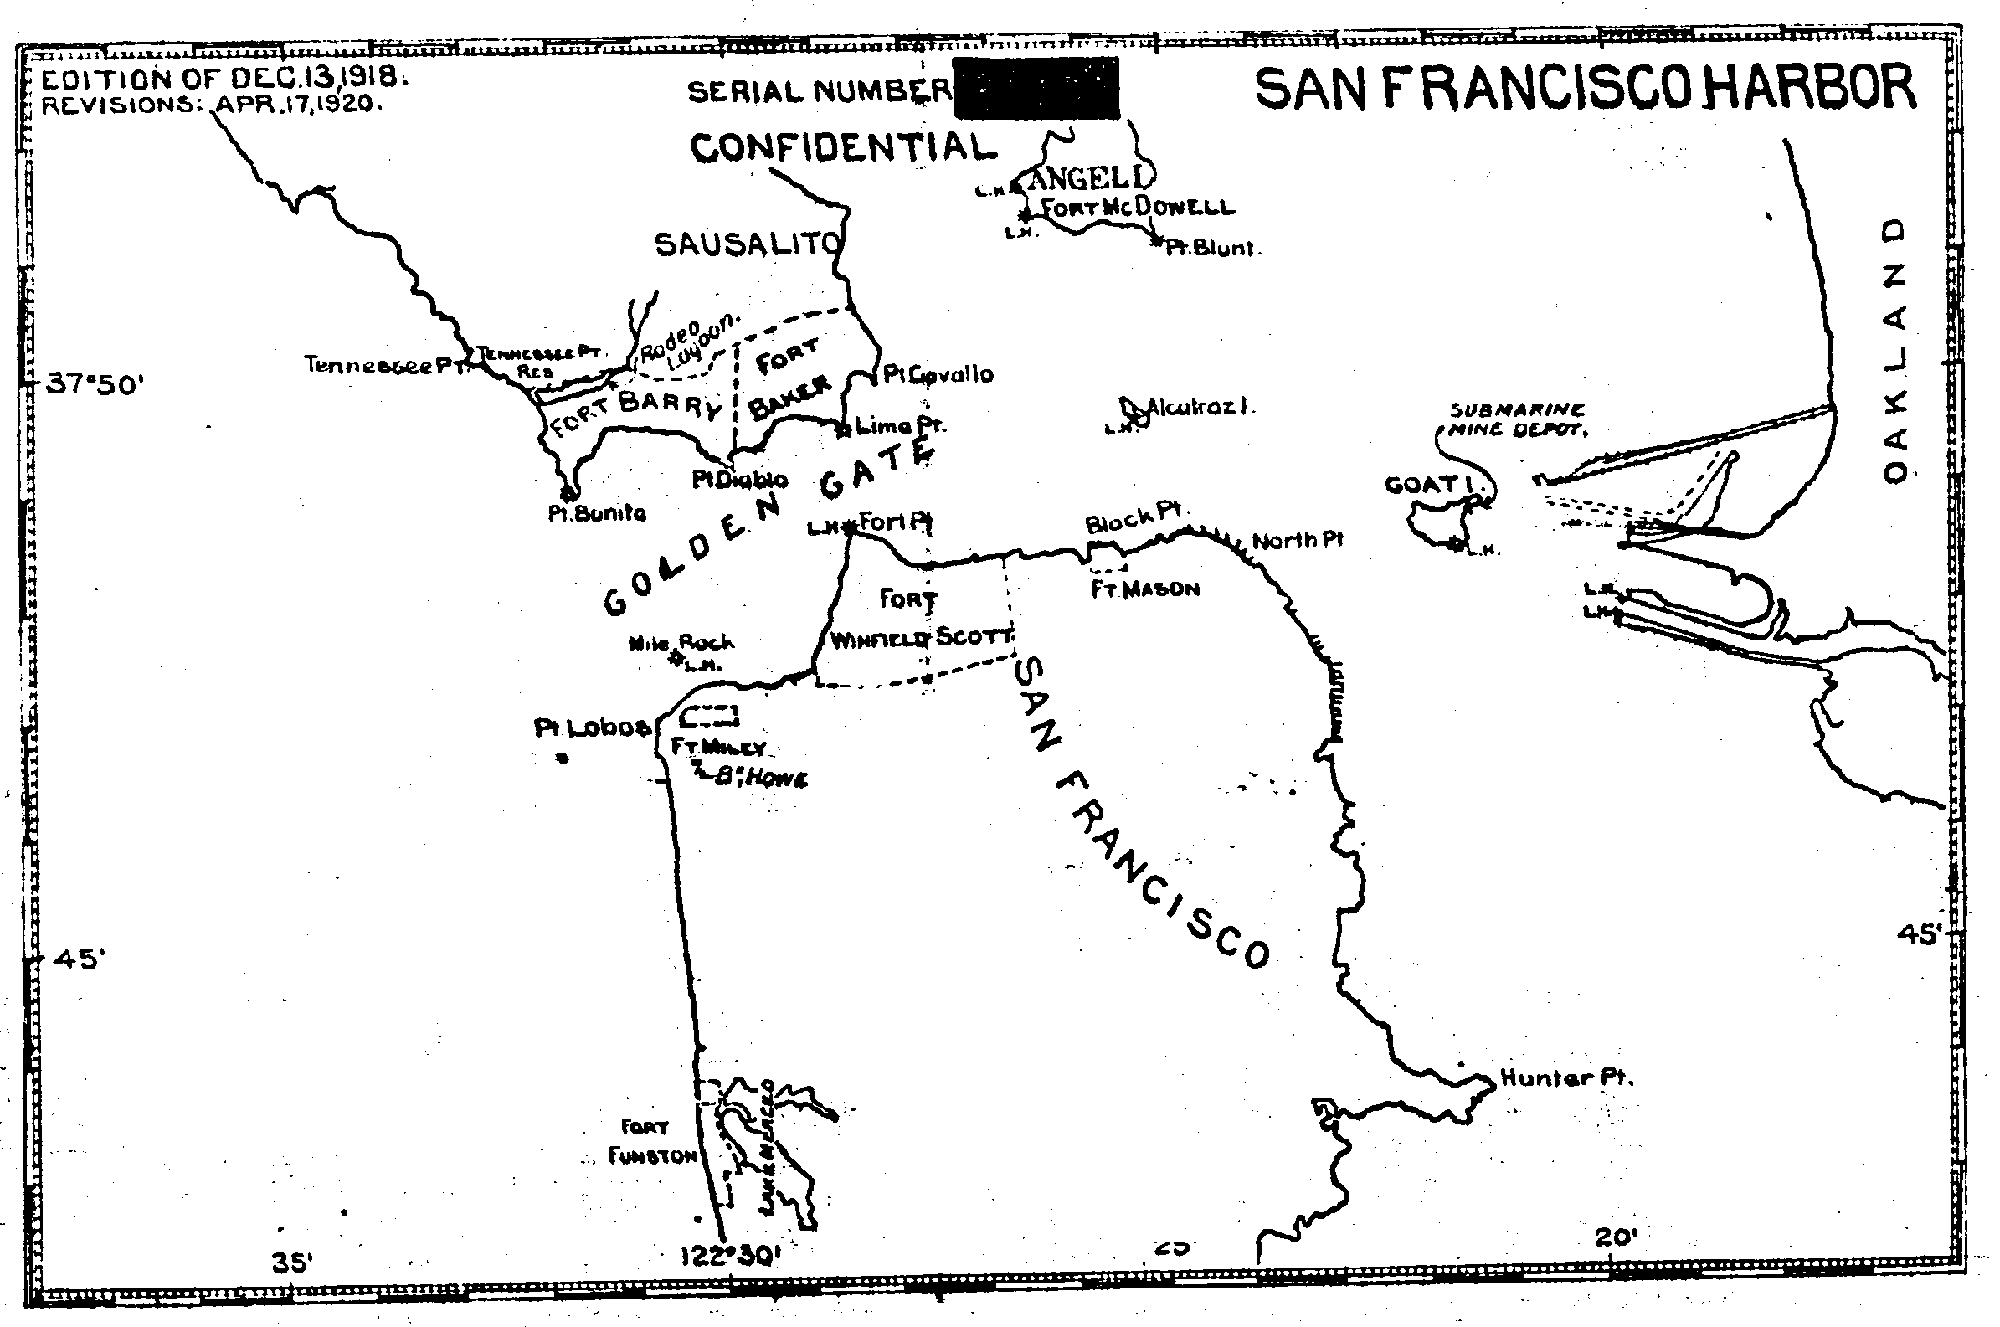 San Francisco Harbor Defenses, 1920